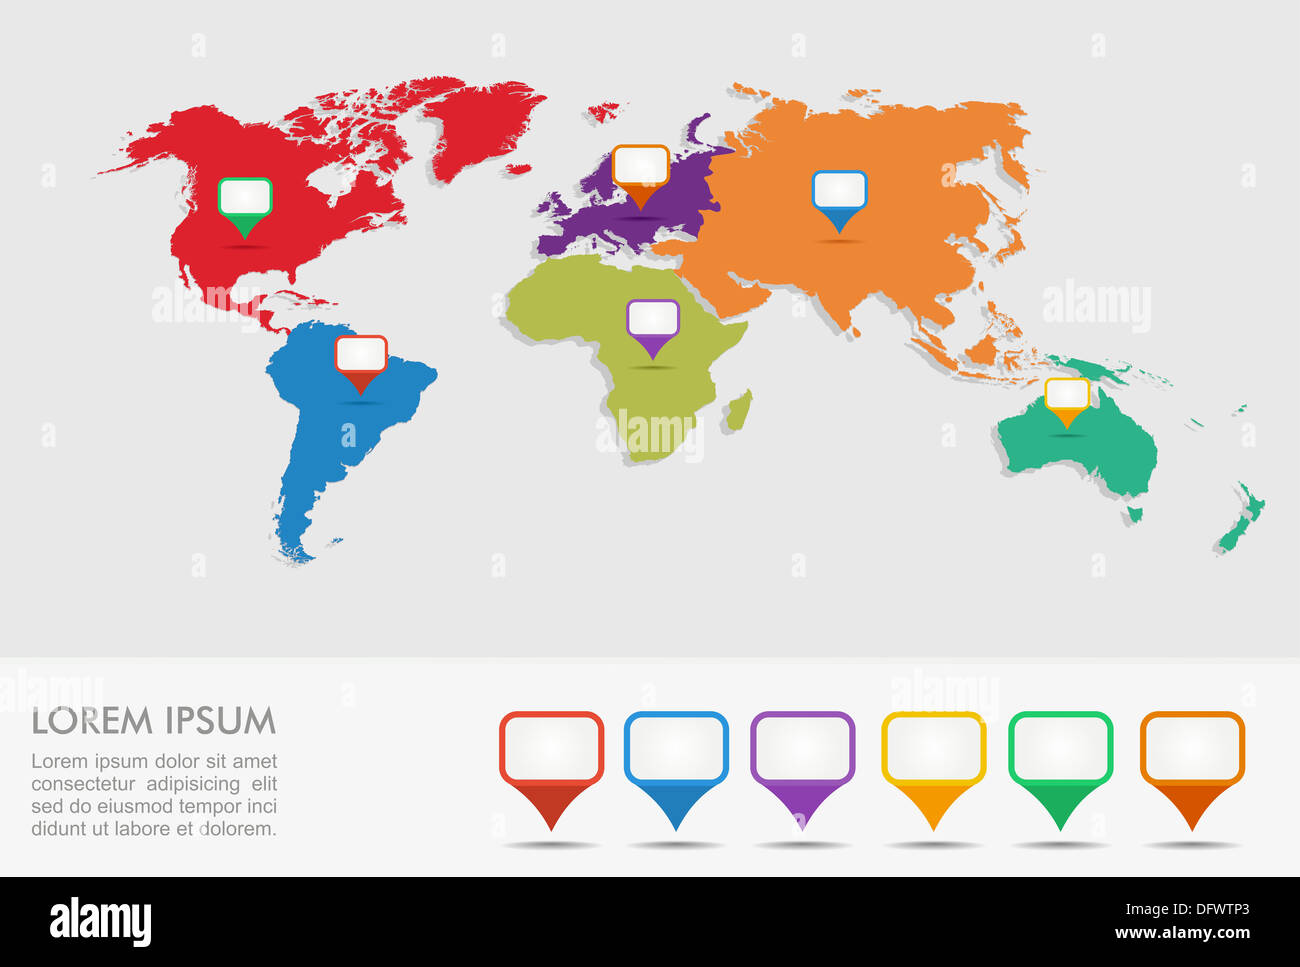 Weltkarte, Geo Position Zeiger Infografiken Vorlage. EPS10 Vektor-Datei organisiert in Schichten für die einfache Bearbeitung. Stockfoto